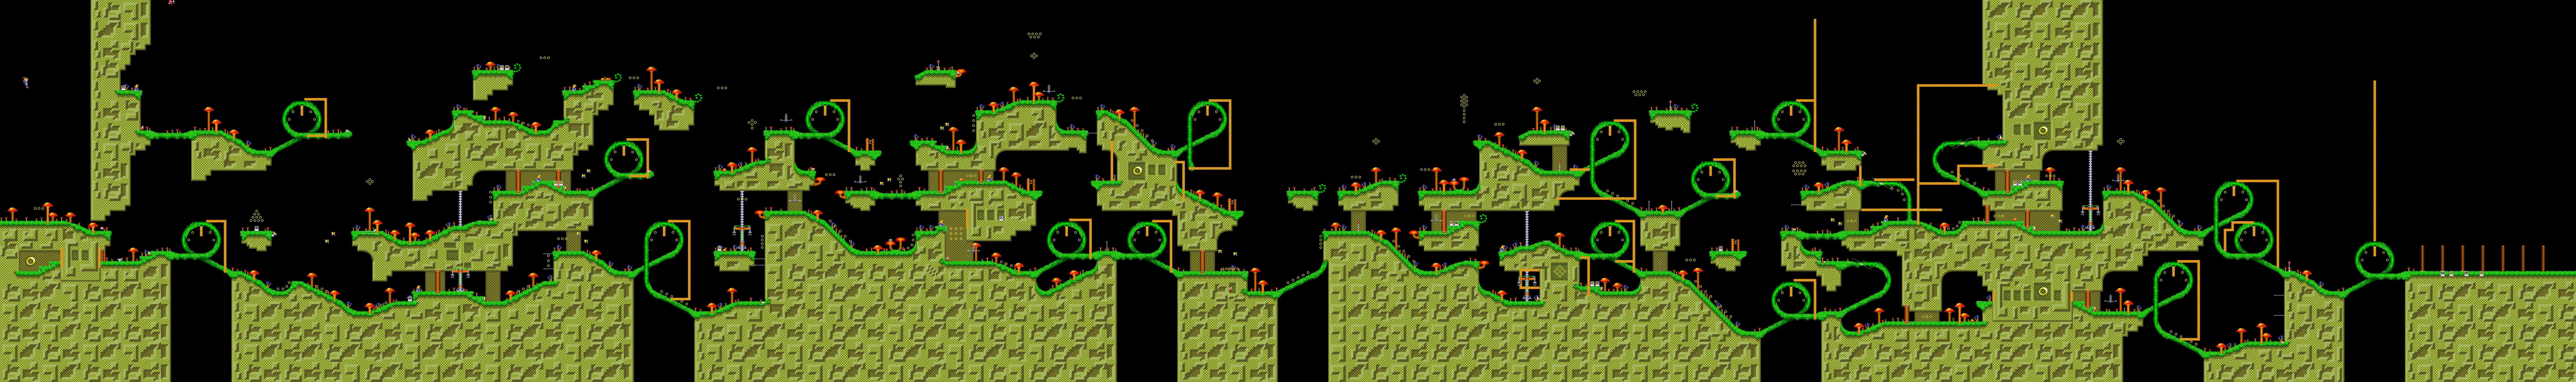 Карты 1.3. Sonic 3 and Knuckles Mushroom Hill Map. Sonic 3 and Knuckles Mushroom Hill Act 2 Map. Mushroom Hill Zone Act 1 Map Sonic & Knuckles. Машрум Хилл Соник 3 карта.